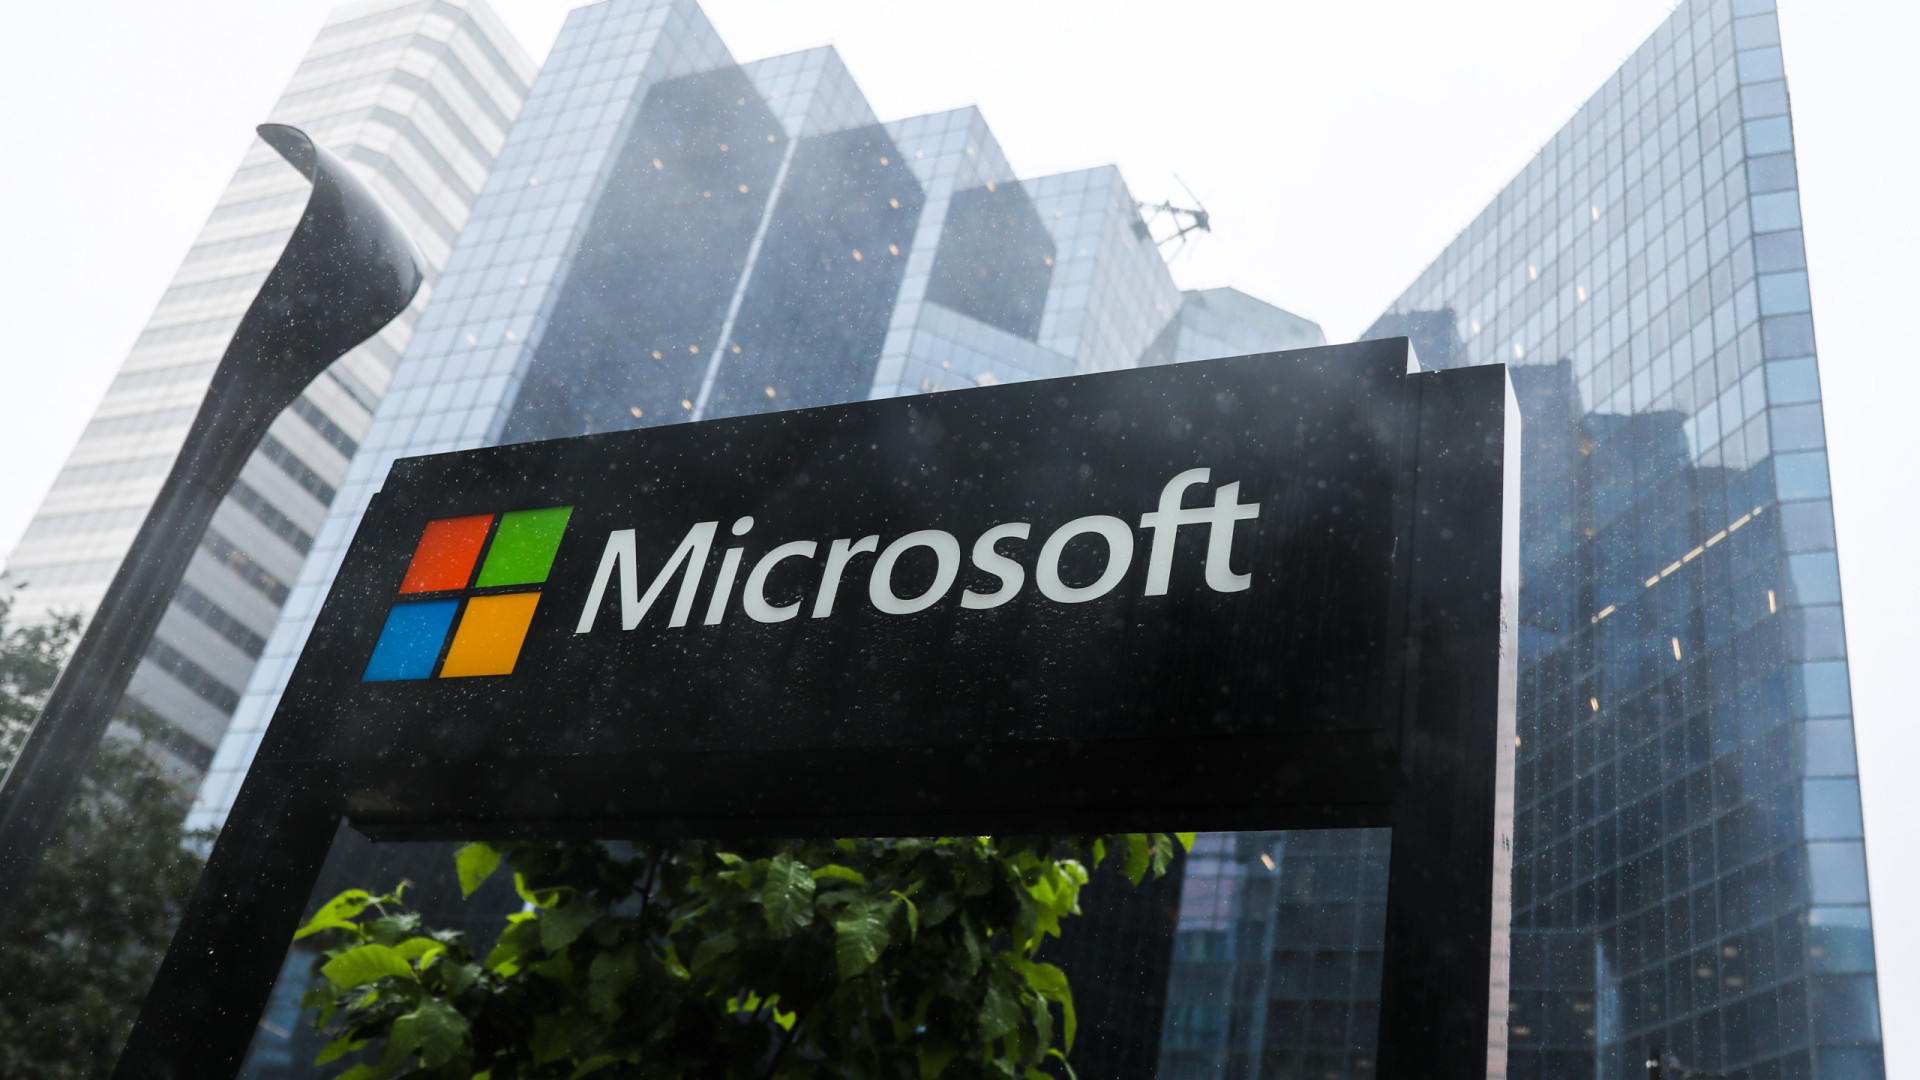 Microsoft pode ter prejudicado concorrência na UE com inclusão do Teams no Office